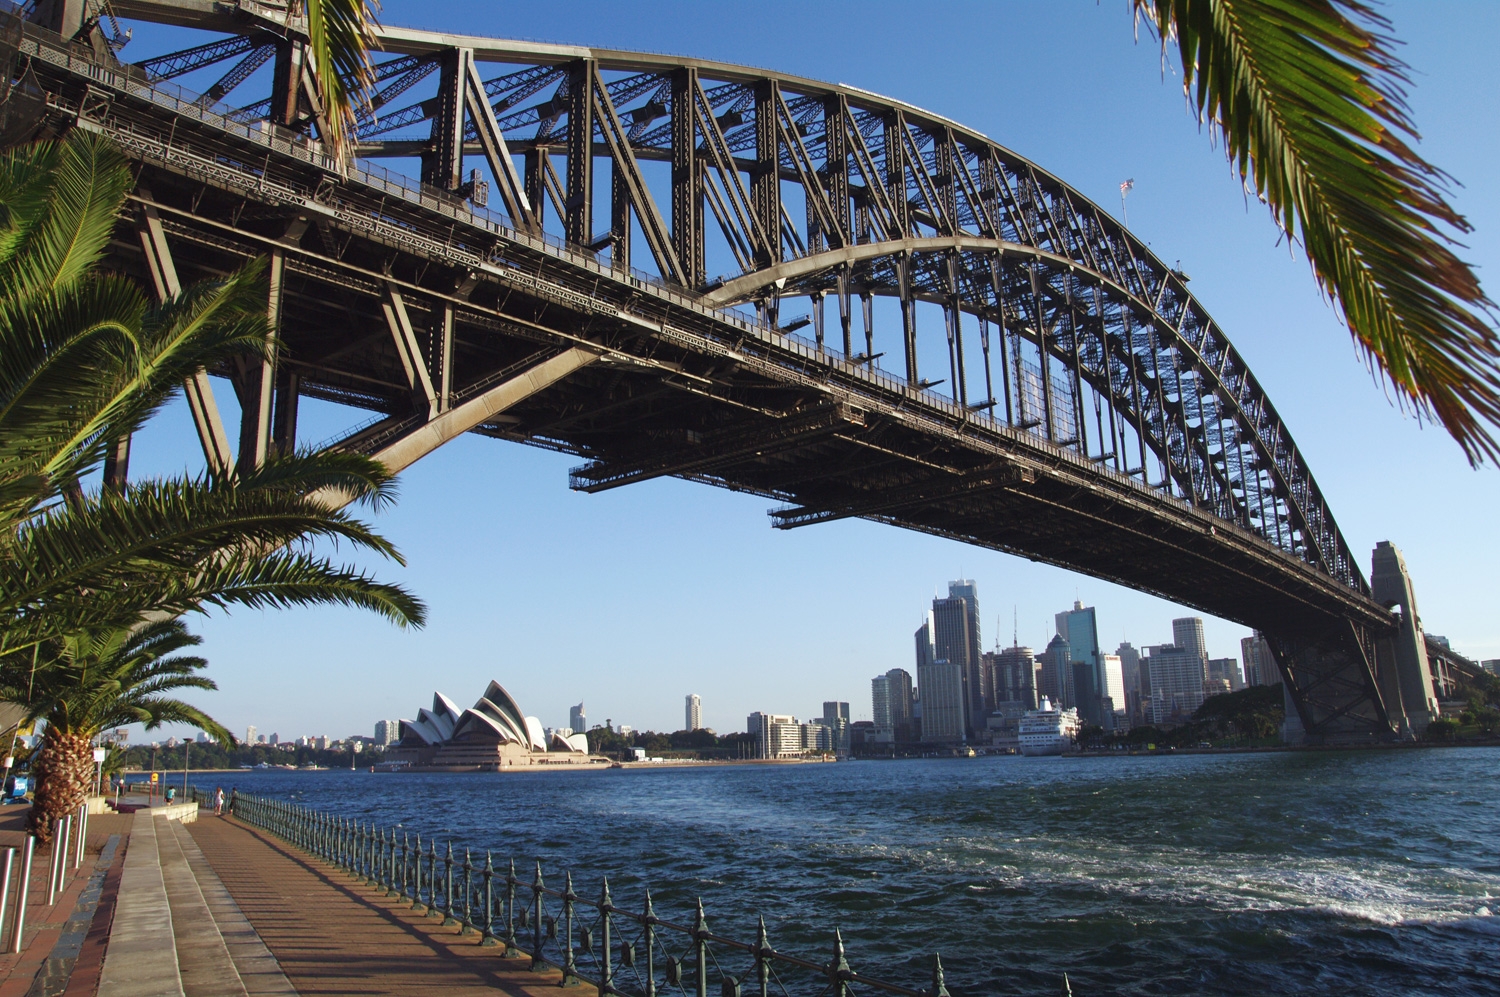 Sydney Harbor Bridge Over The Opera